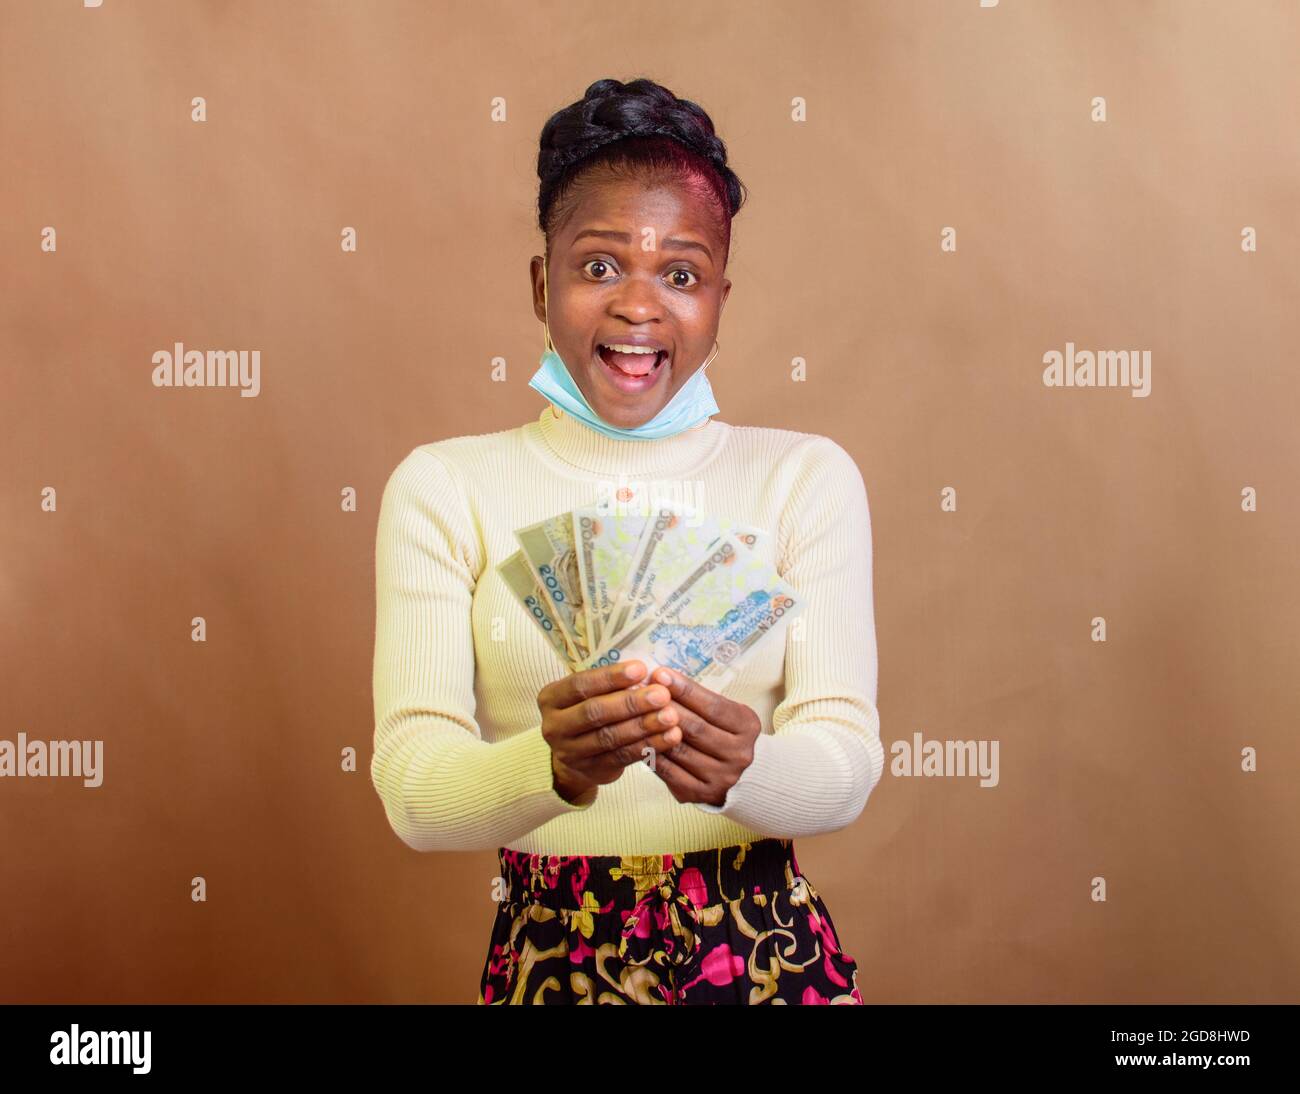 Fröhliche, süße afrikanische Dame mit Nasenmaske, die mehrere Naira-Scheine, Bargeld, nigerianische Währung oder Geld für Transaktionen in ihren Händen hält Stockfoto